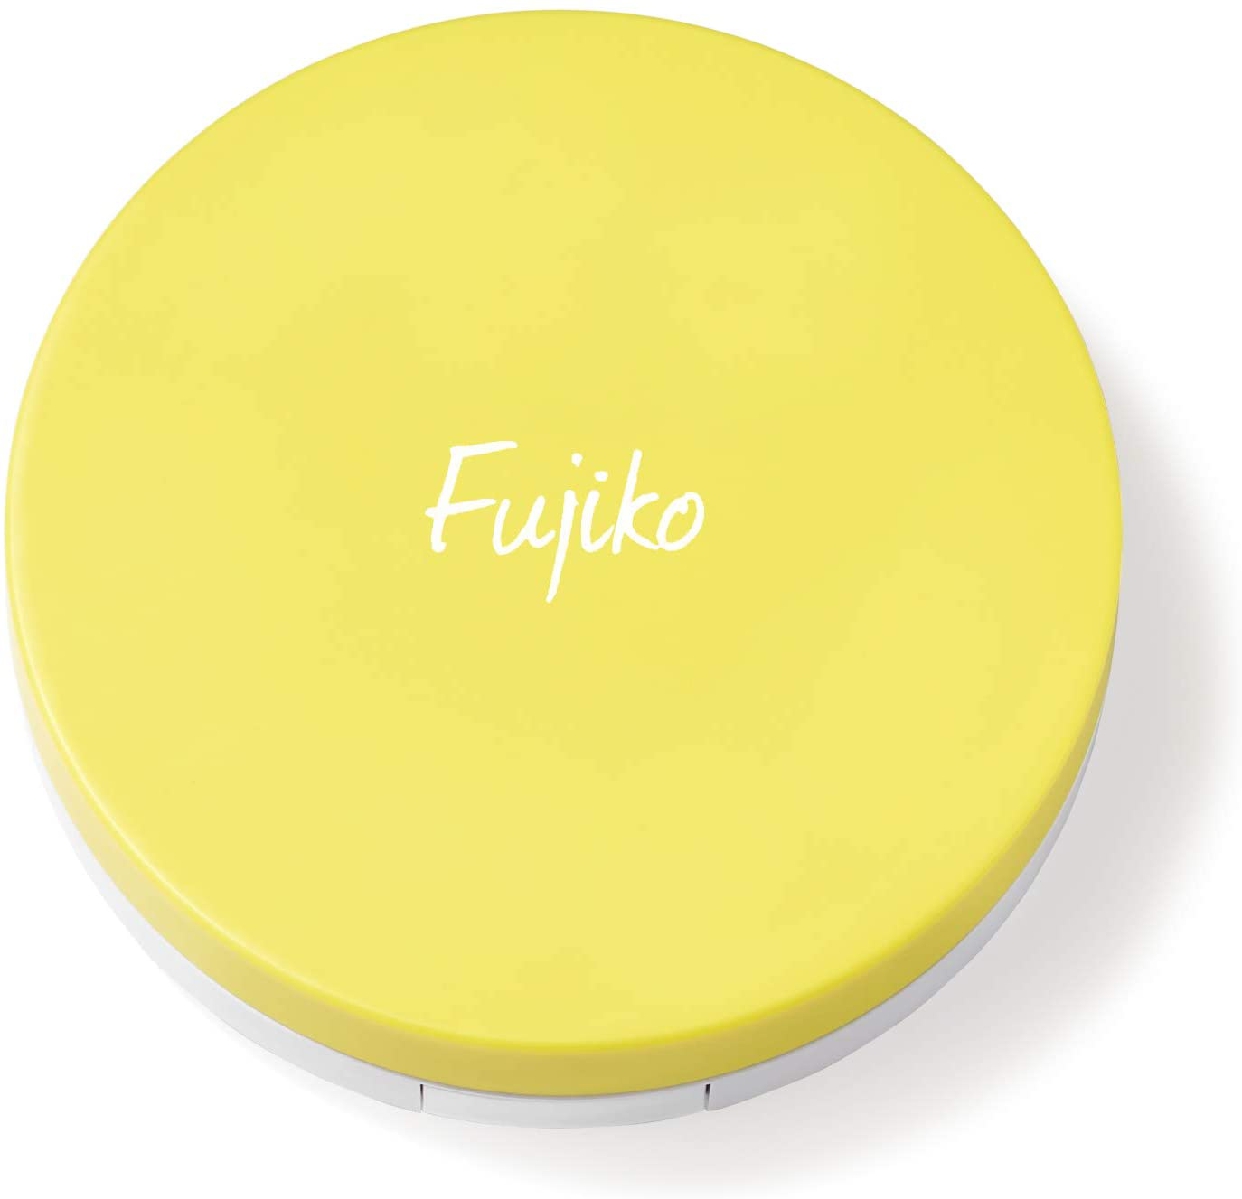 Fujiko(フジコ) あぶらとりウォーターパウダーの商品画像2 